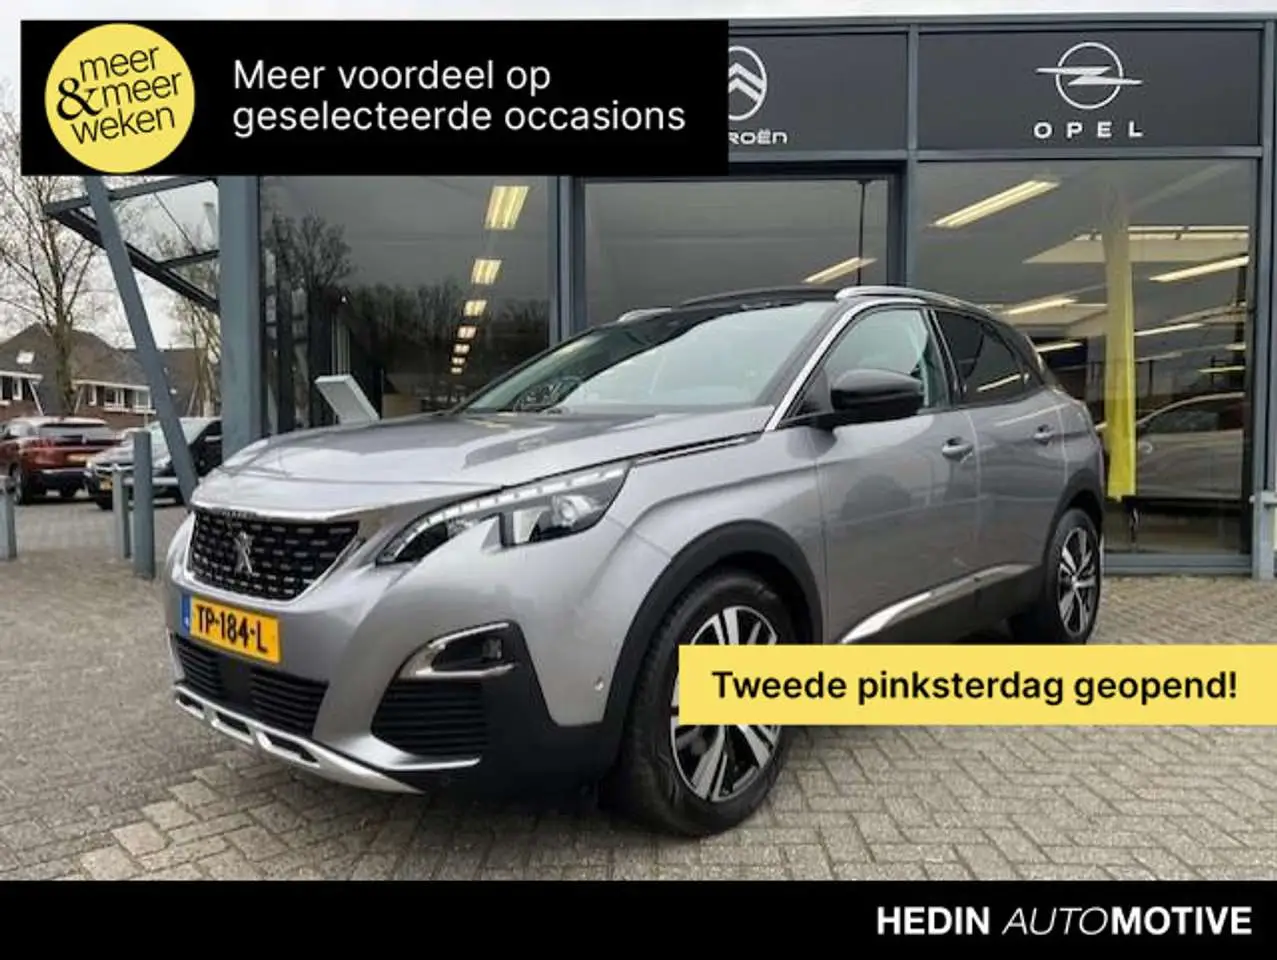 Photo 1 : Peugeot 3008 2018 Petrol